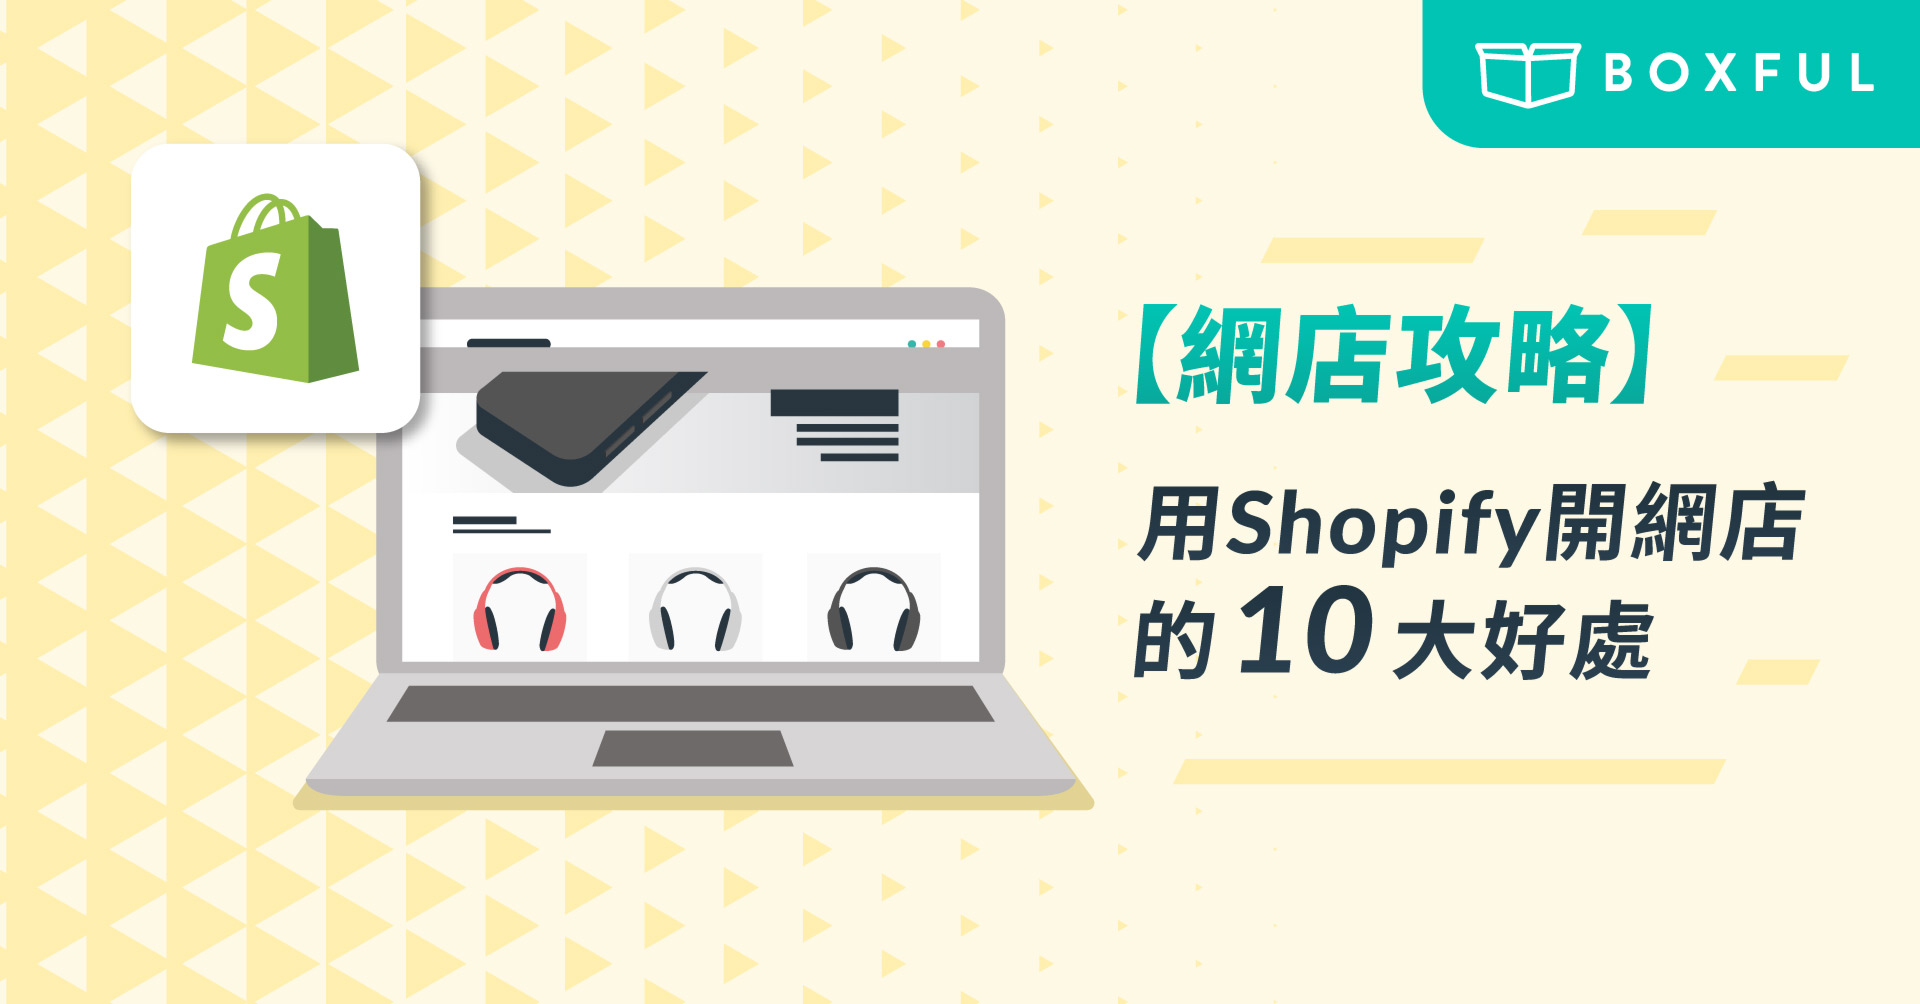 【網店攻略】用 Shopify 開網店的10大好處